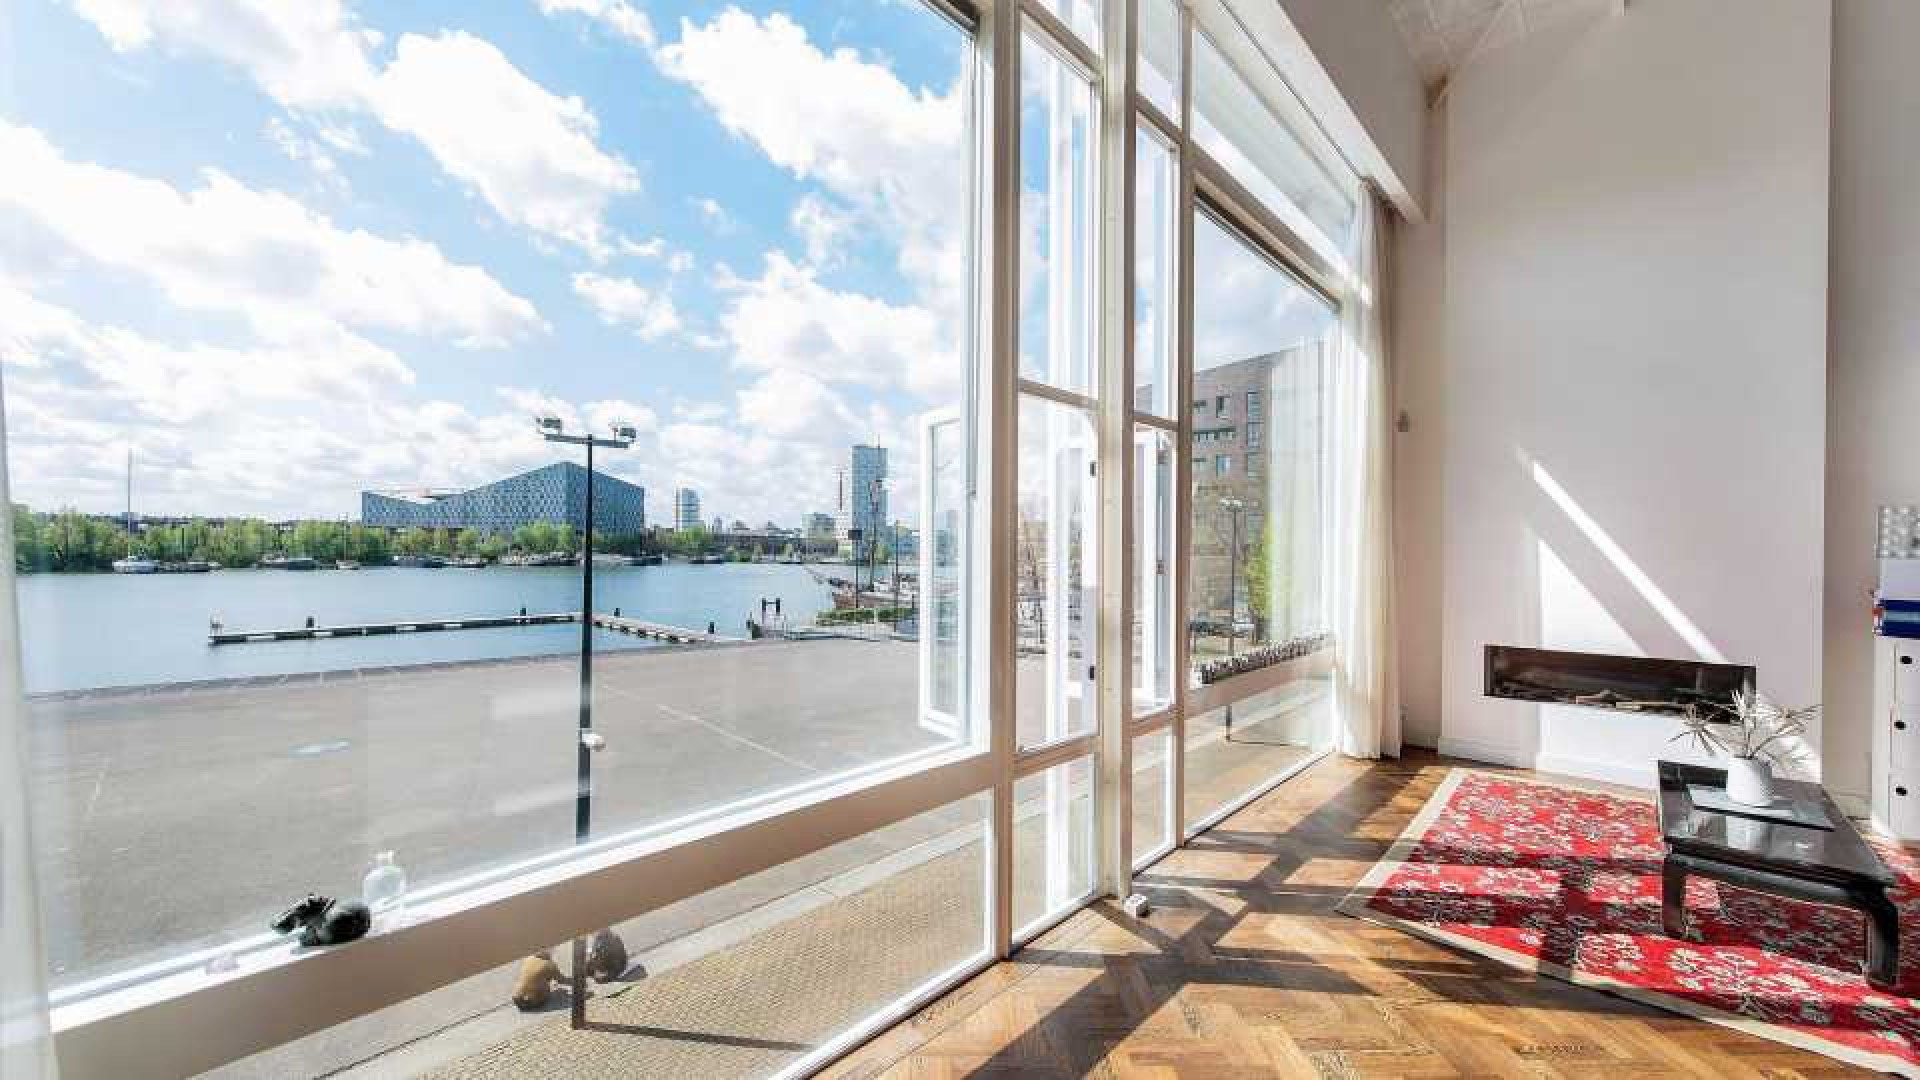 Deze bekende nederlander heeft al zeven jaar zijn Amsterdamse penthouse te koop staan. Zie foto's penthouse 8